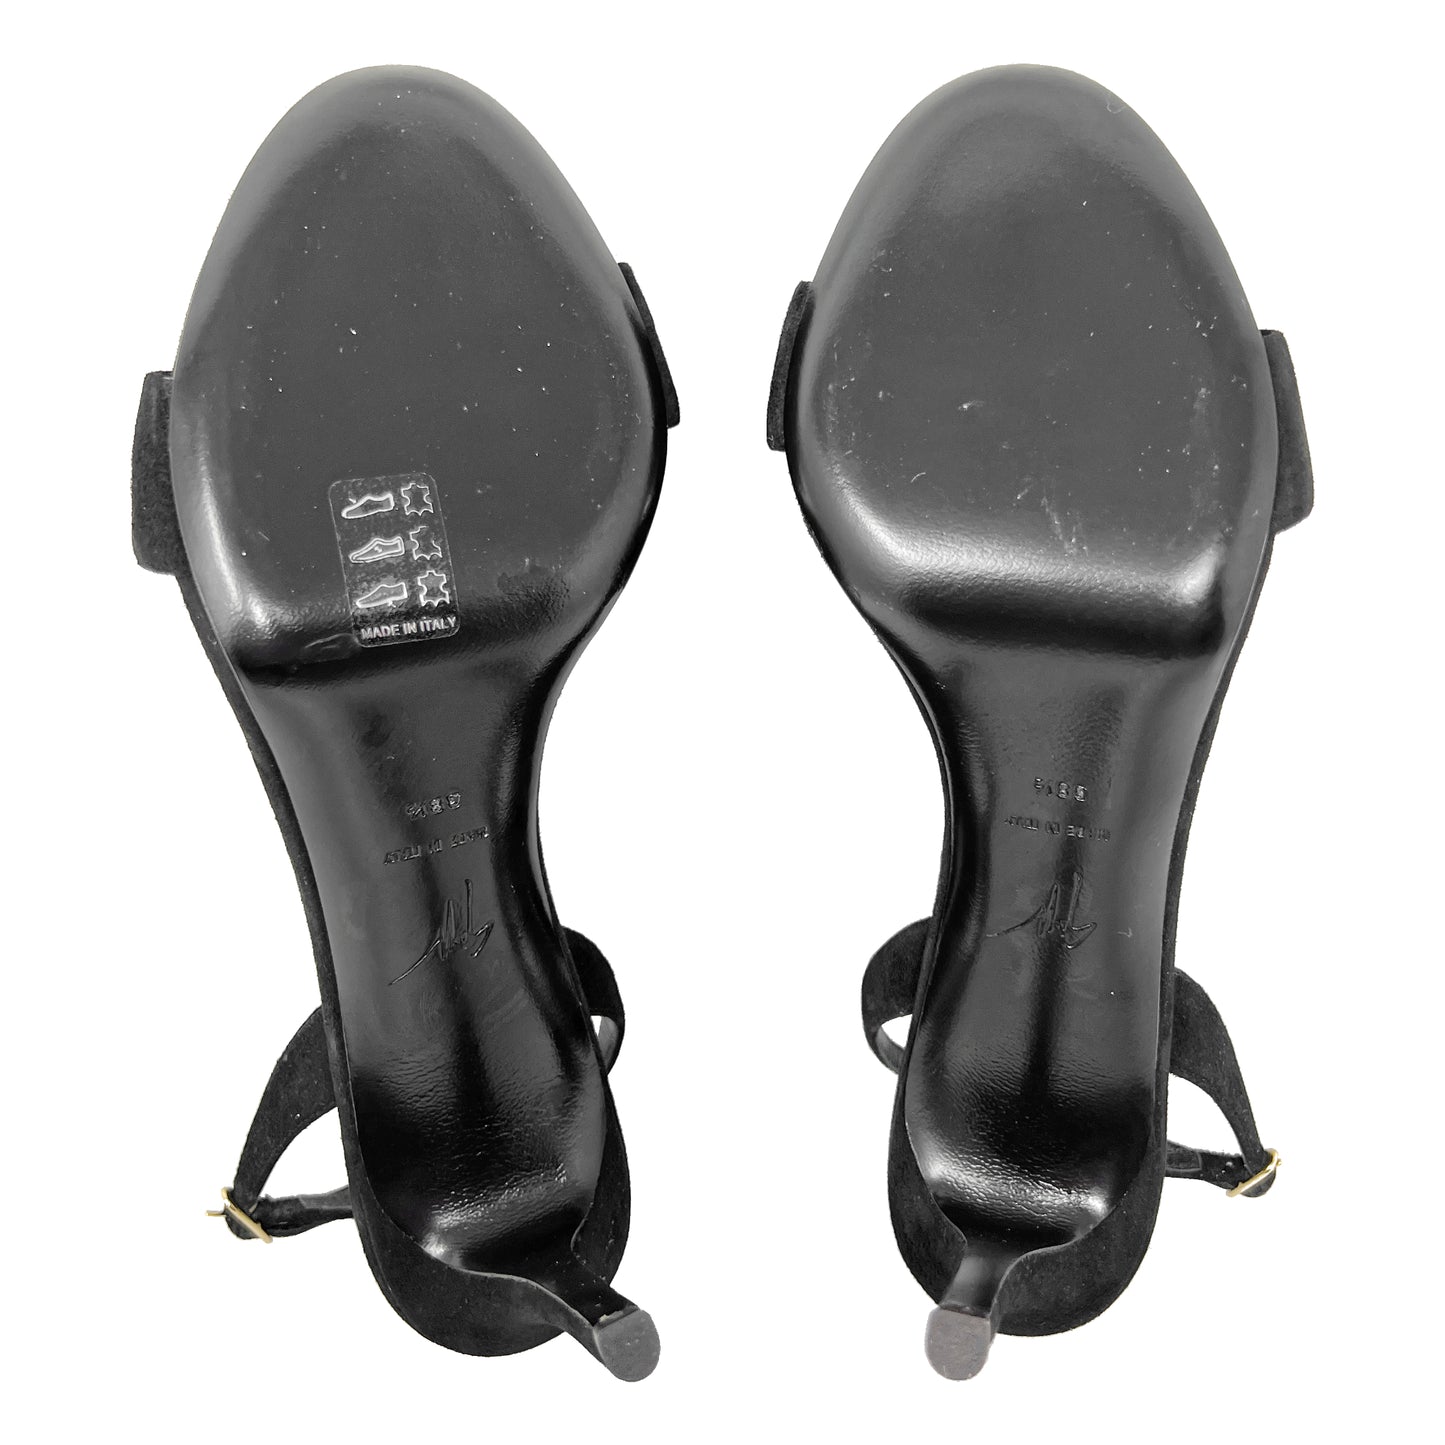 Giuseppe Zanotti Gem Crystal Embellished Black Suede Slingback High Heel Sandals Size EU 38.5